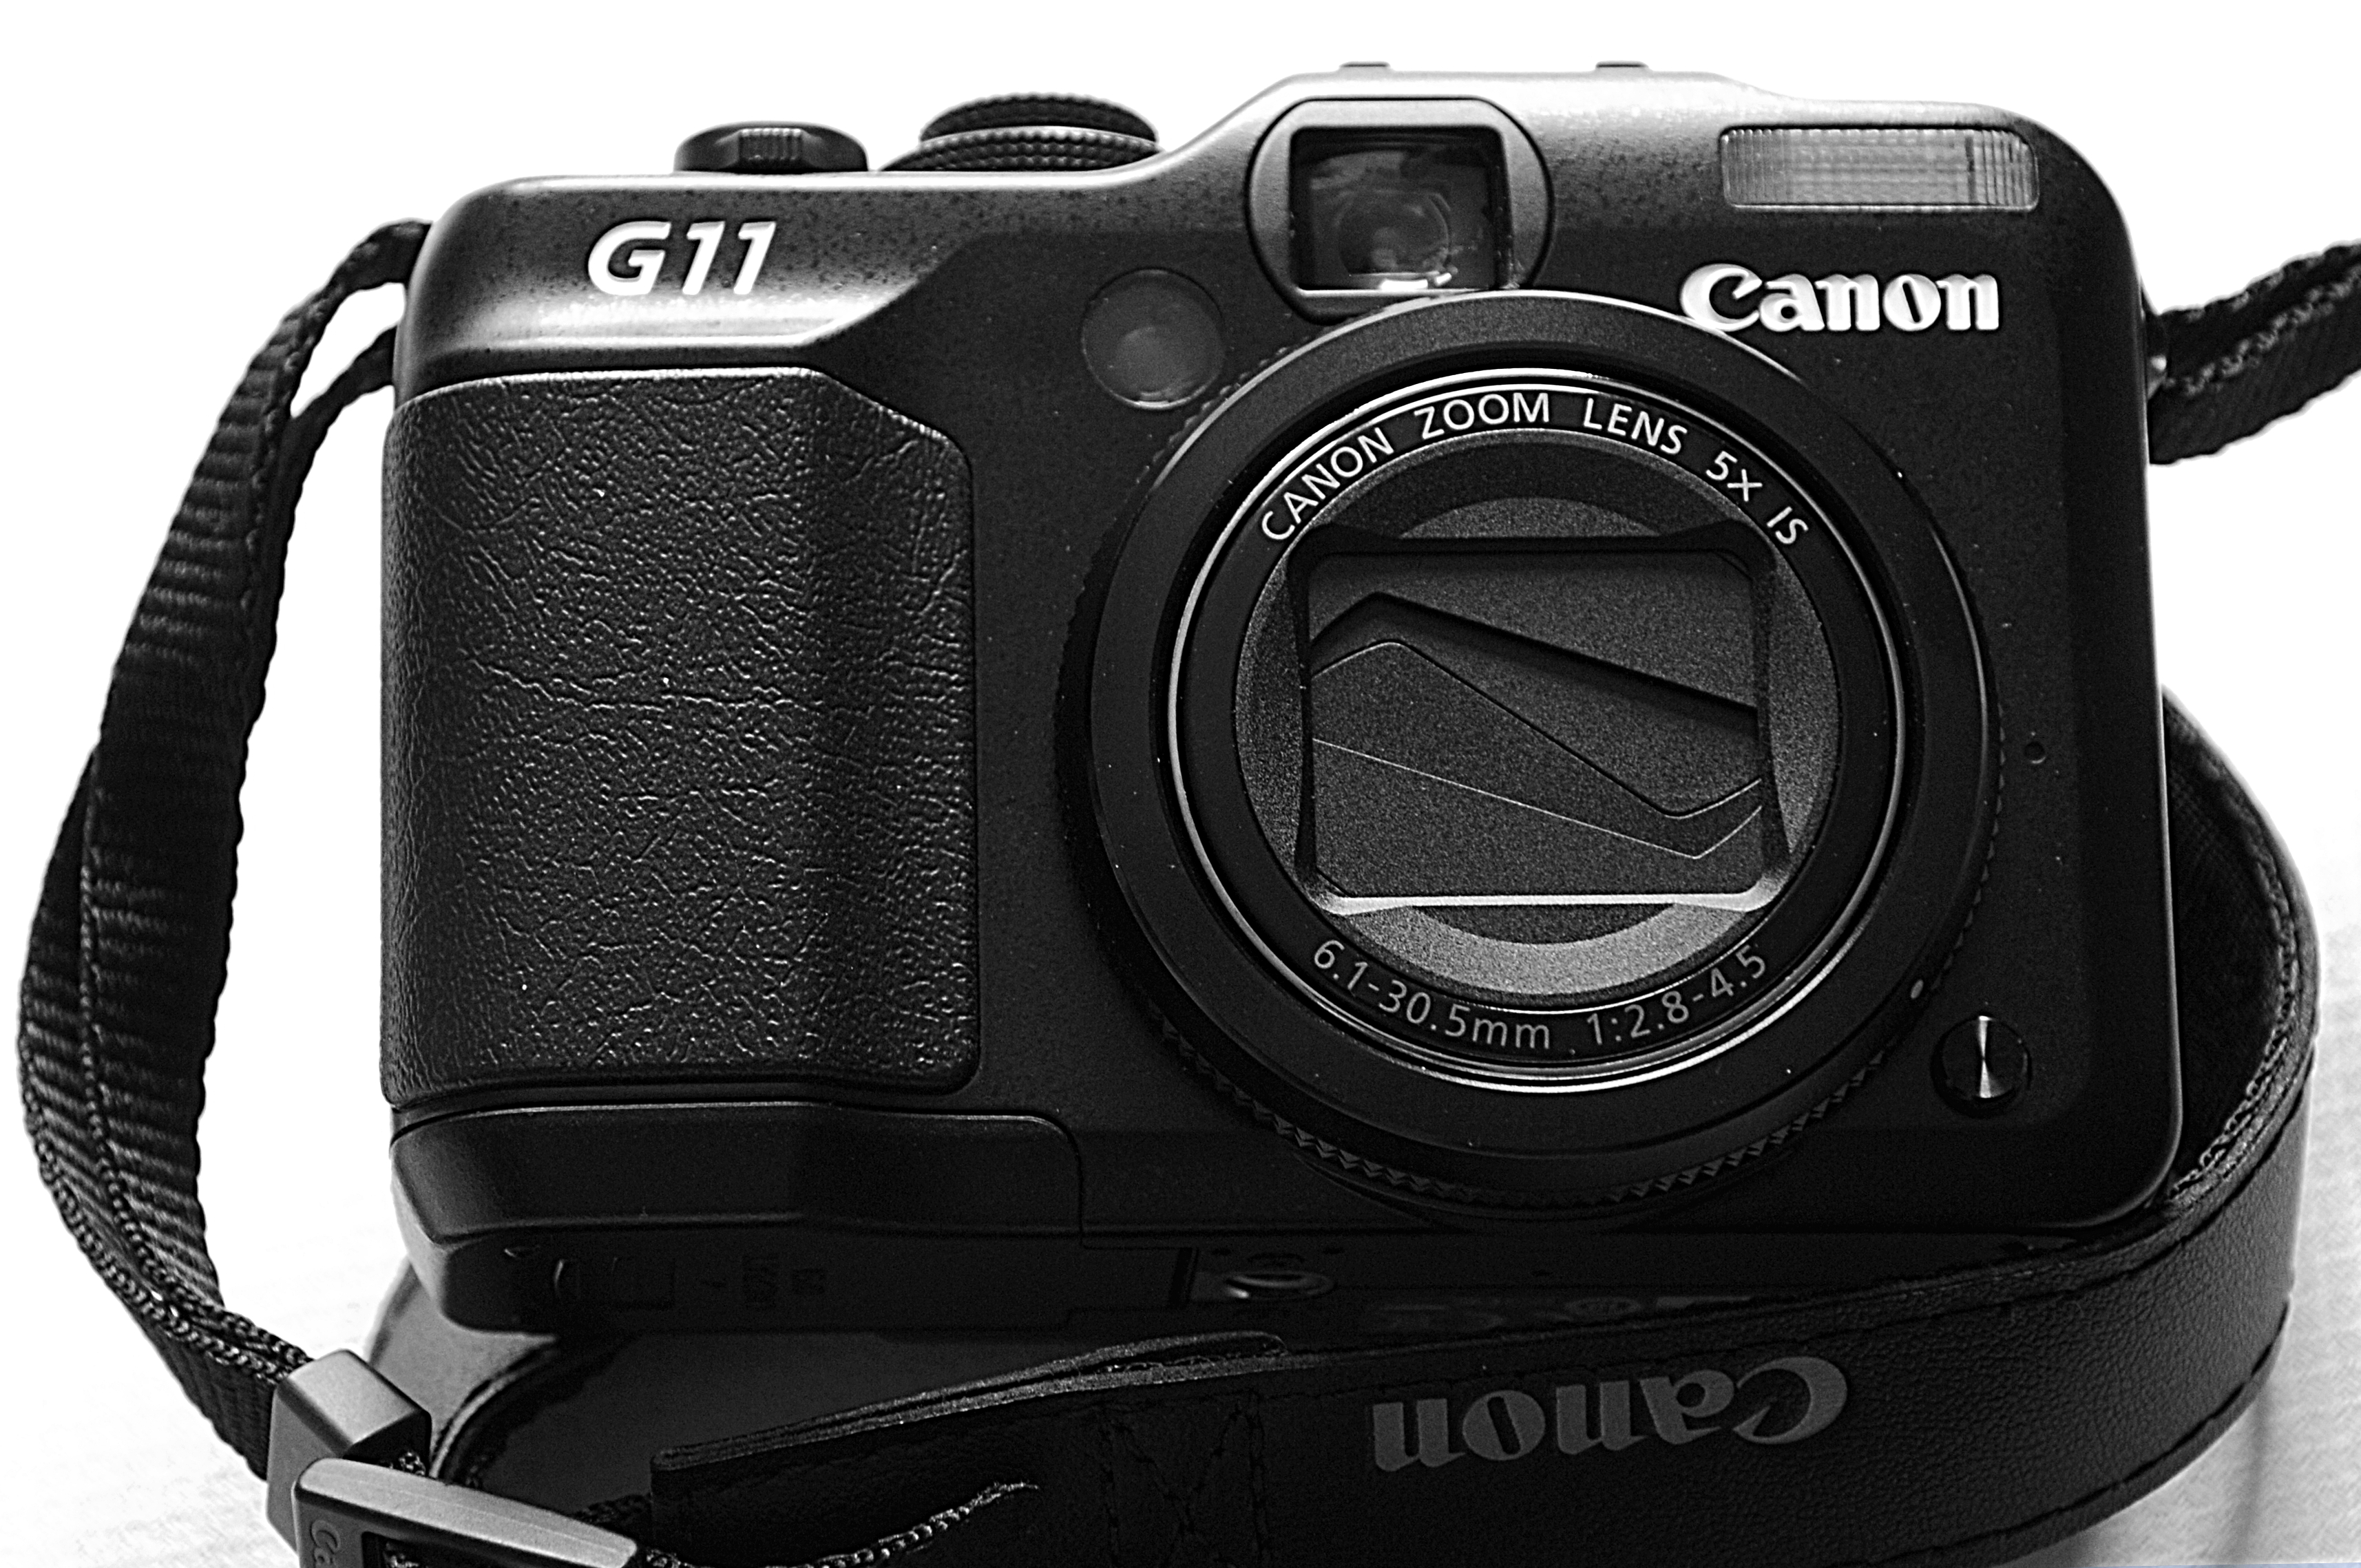 File:Canon PowerShot G11-102.jpg - Wikimedia Commons